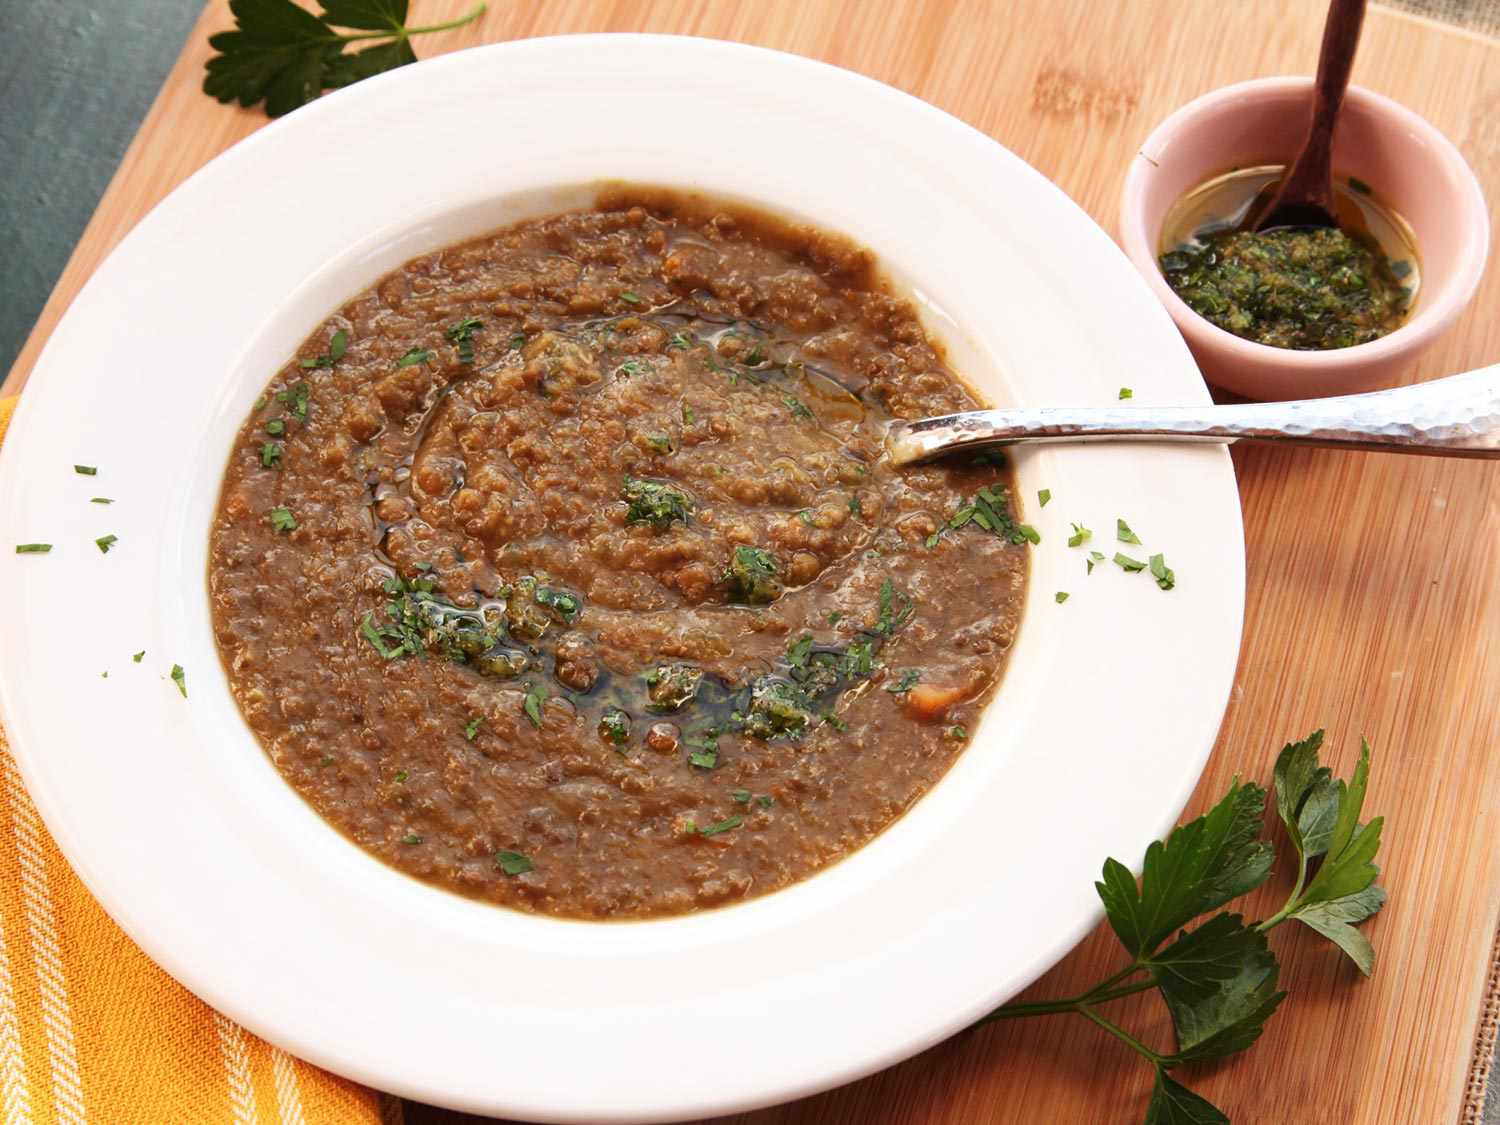 20141013-easy-lentil-soup-recipe-12.jpg